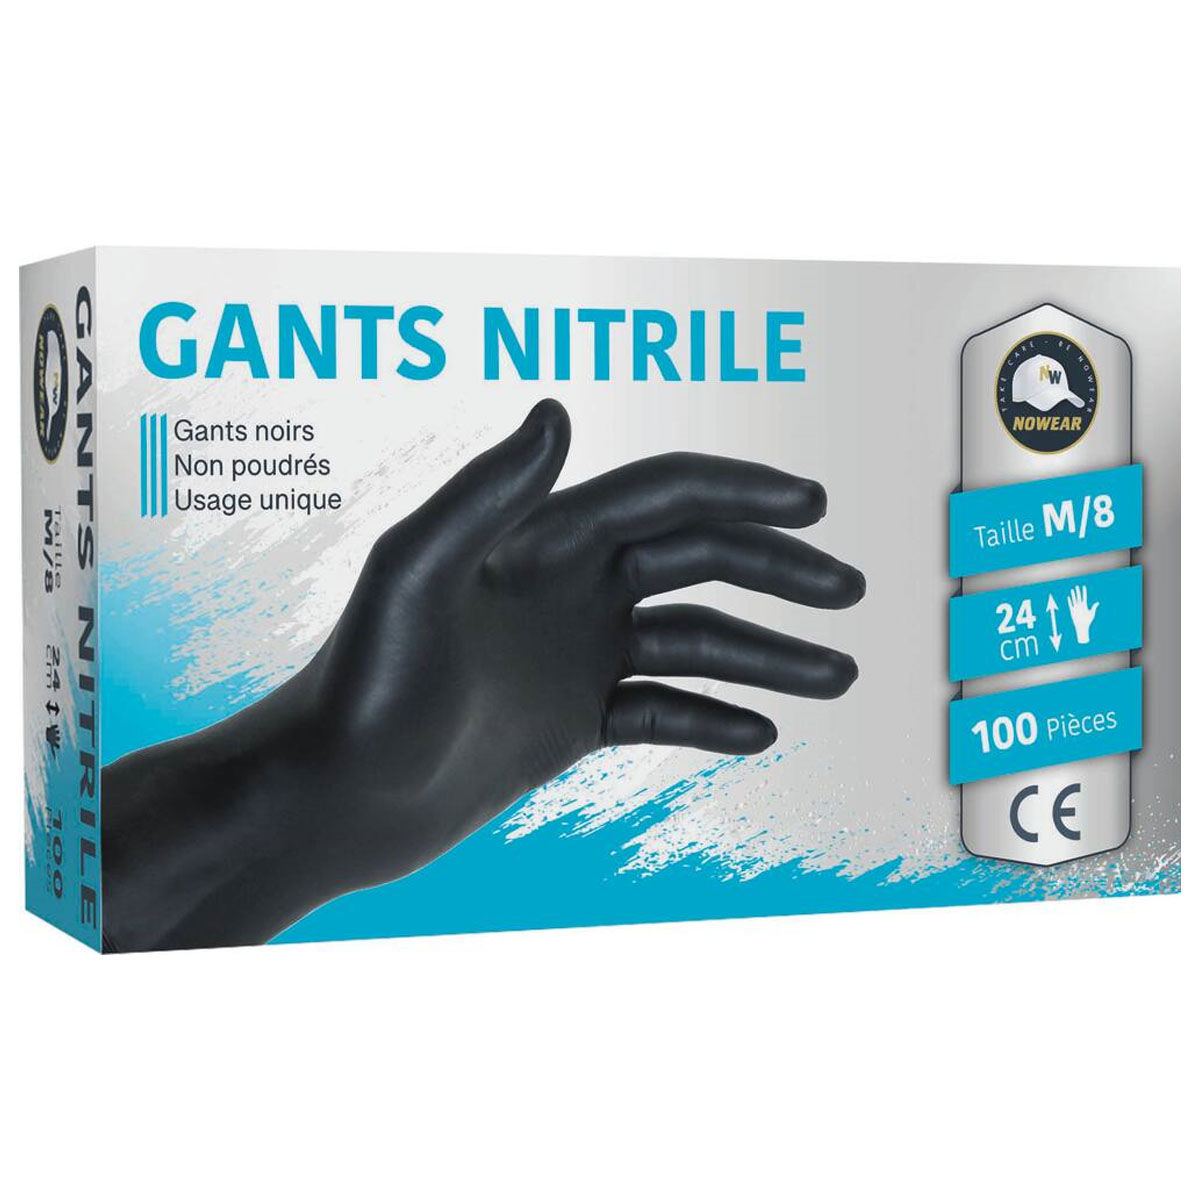 Gant nitrile bleu non poudré, boîte de 100 gants, Dès 6,49€ HT